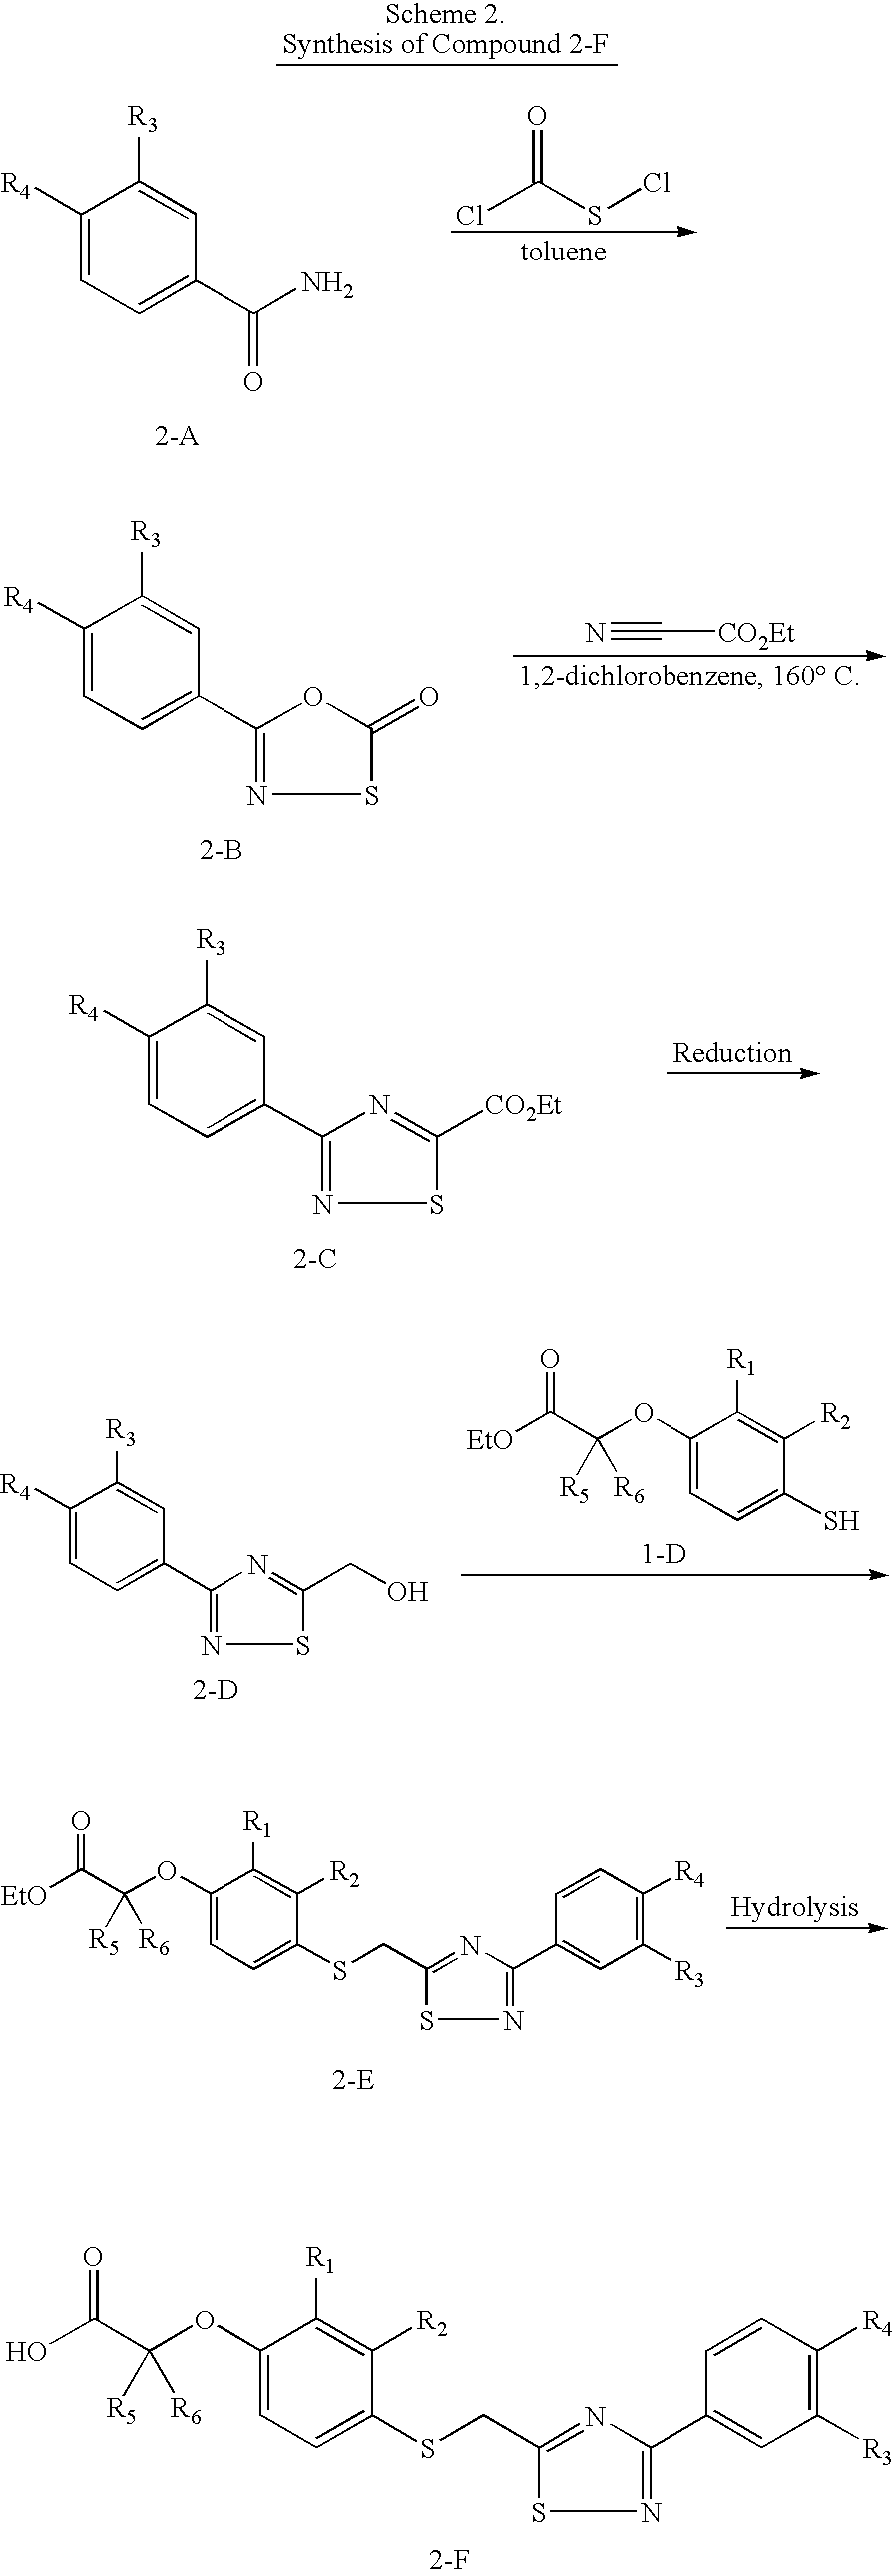 4-((Phenoxyalkyl)thio)-phenoxyacetic acids and analogs